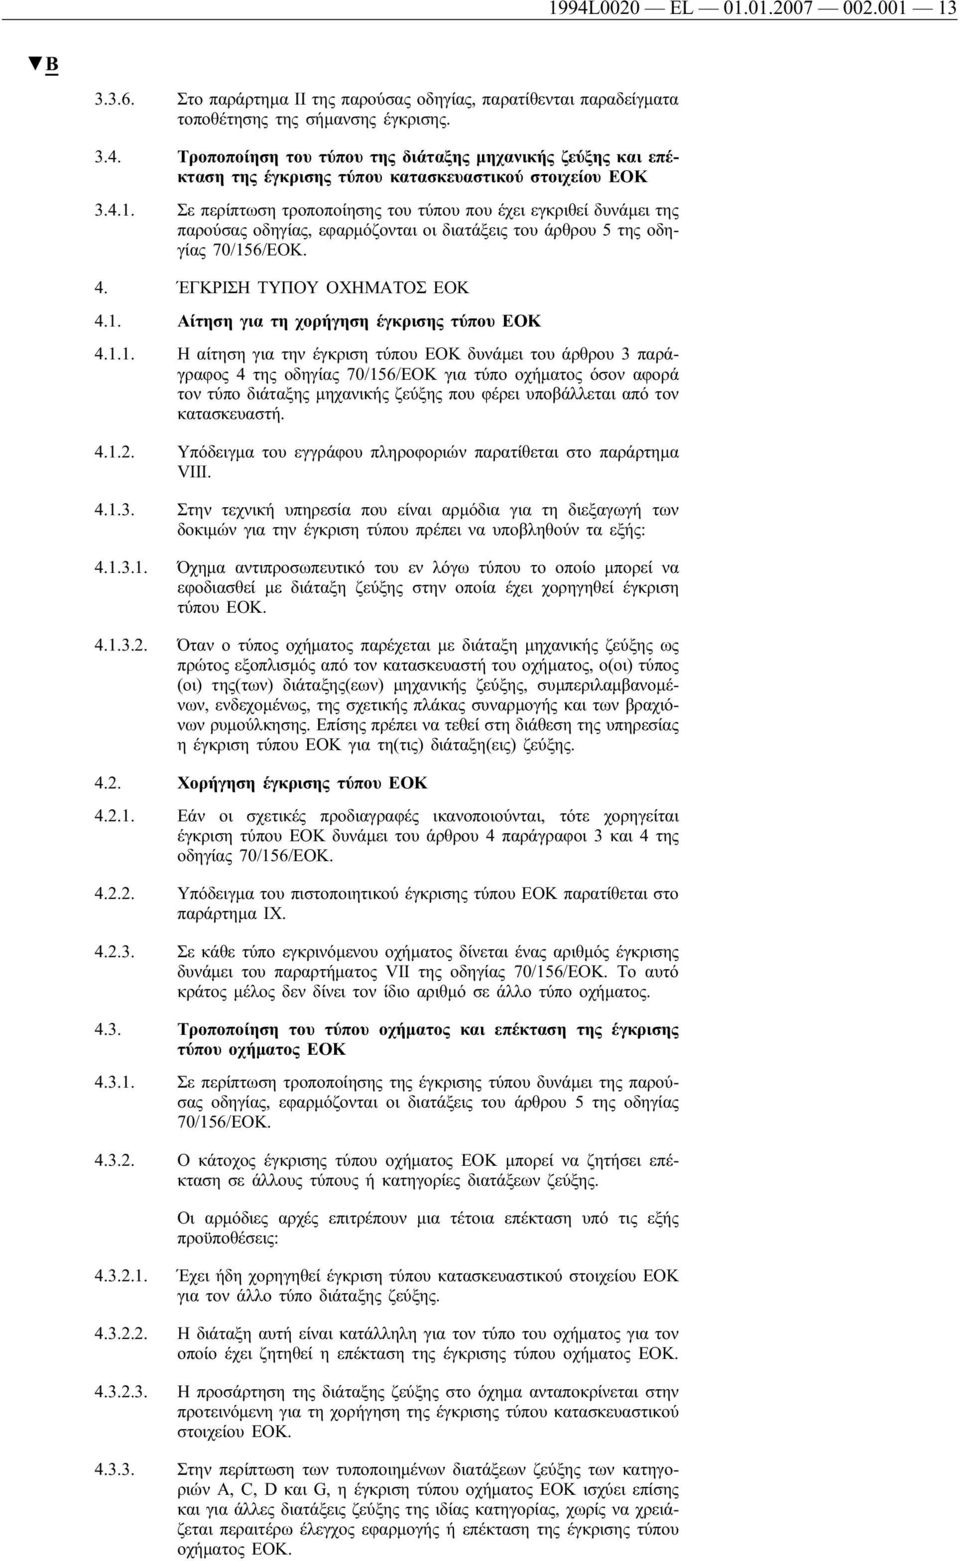 1.1. Η αίτηση για την έγκριση τύπου ΕΟΚ δυνάμει του άρθρου 3 παράγραφος 4 της οδηγίας 70/156/ΕΟΚ για τύπο οχήματος όσον αφορά τον τύπο διάταξης μηχανικής ζεύξης που φέρει υποβάλλεται από τον